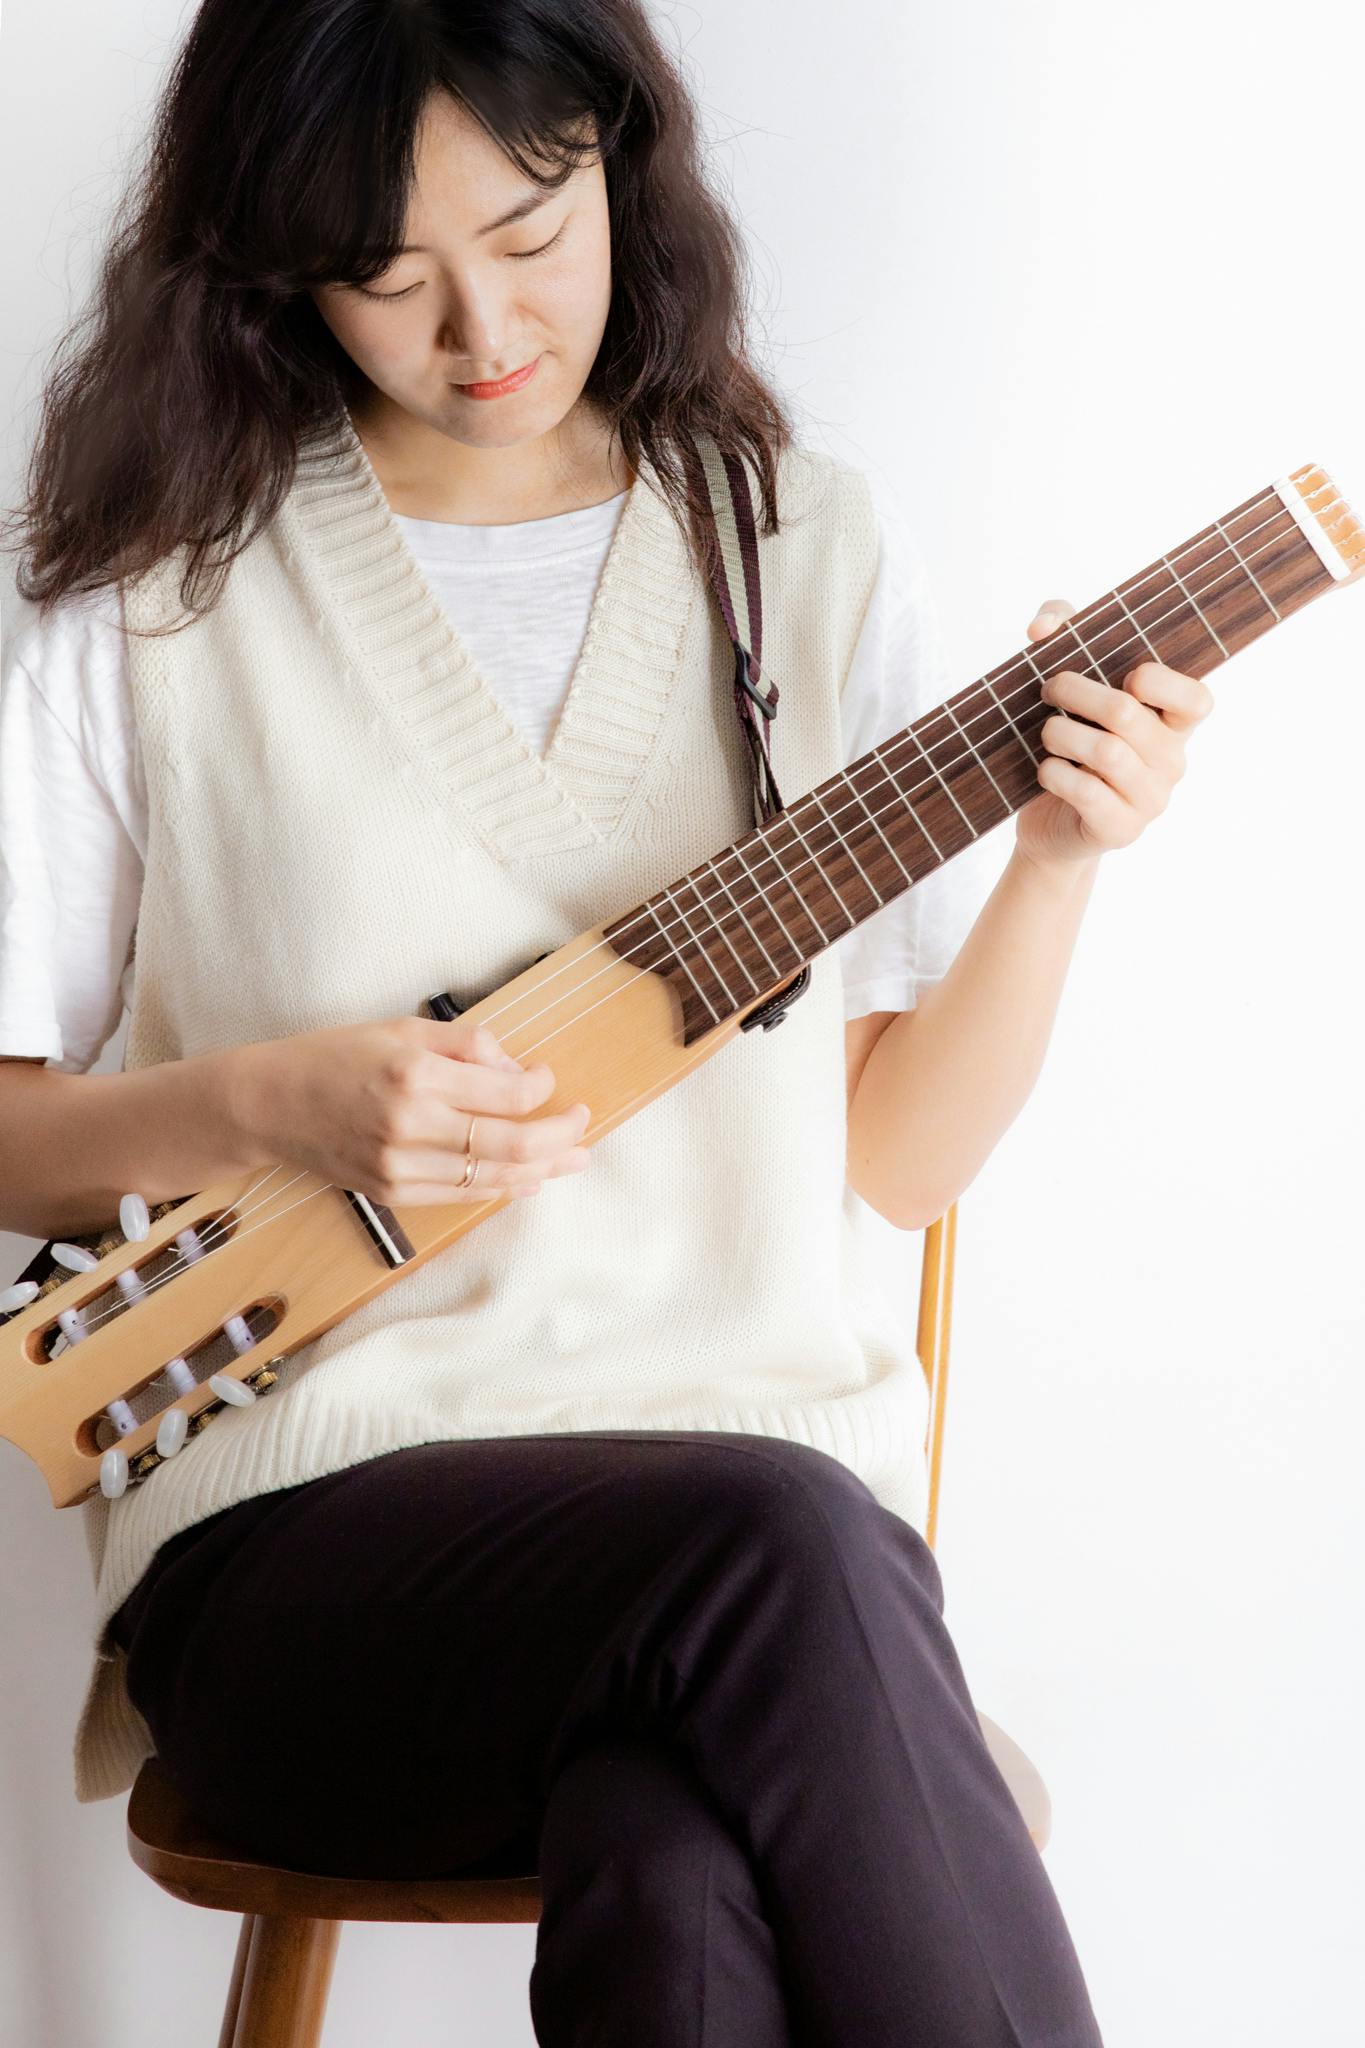 イヤホン一つで自分だけの世界を作り出す自分専用のギター「Klang」